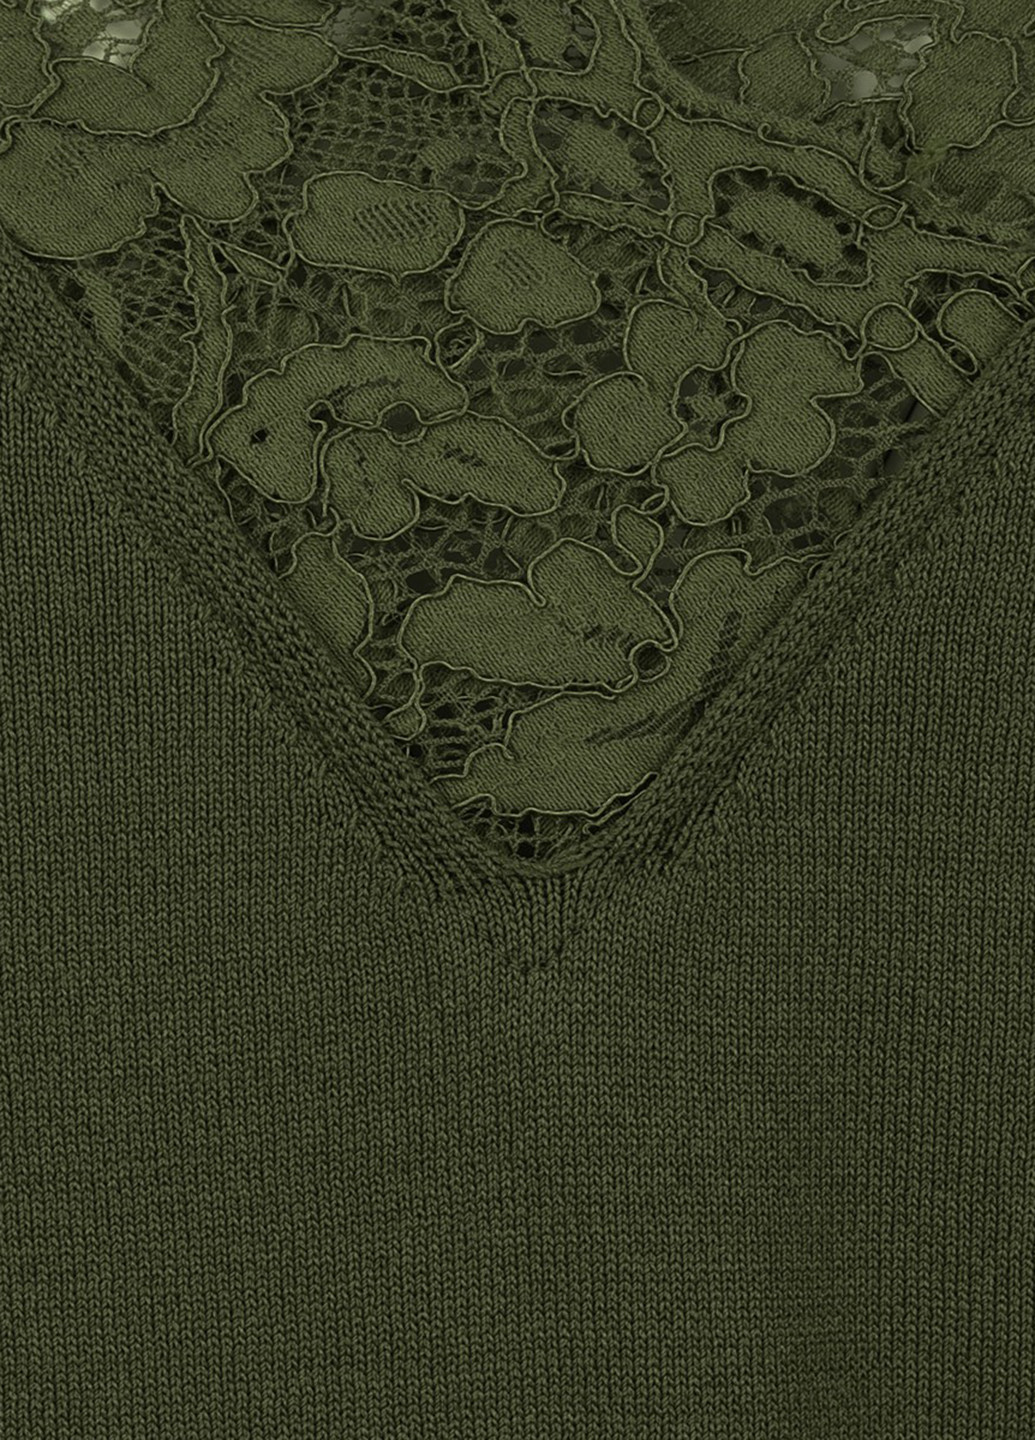 Оливковый (хаки) демисезонный джемпер пуловер LOVE REPUBLIC